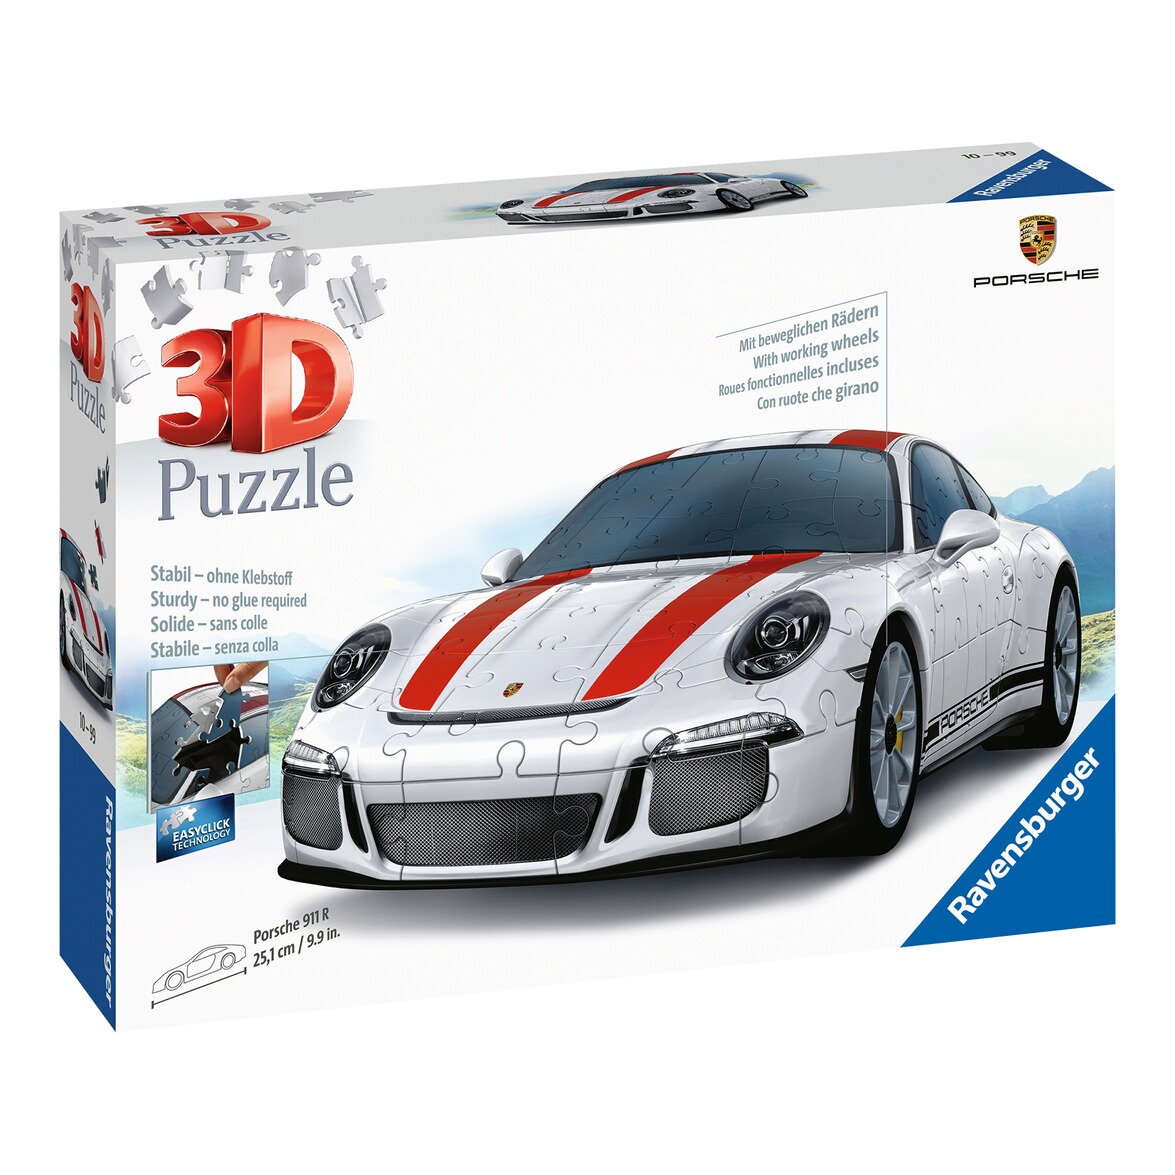 Ravensburger 3D Puzzle "Porsche 911 R", 108 Teile online